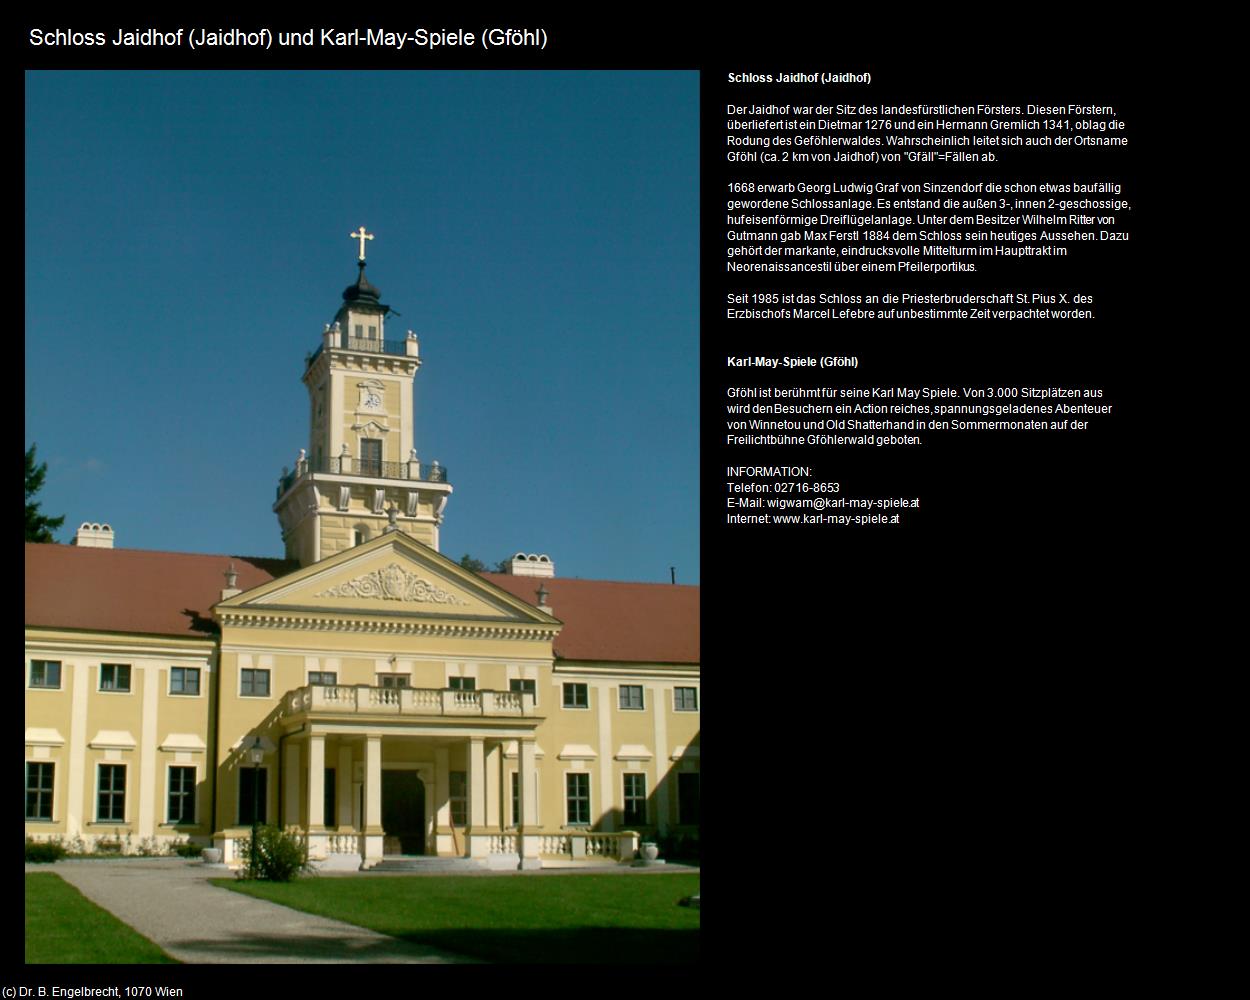 Schloss Jaidhof und Karl-May-Spiele (Jaidhof) (Gföhl) in Kulturatlas-NIEDERÖSTERREICH